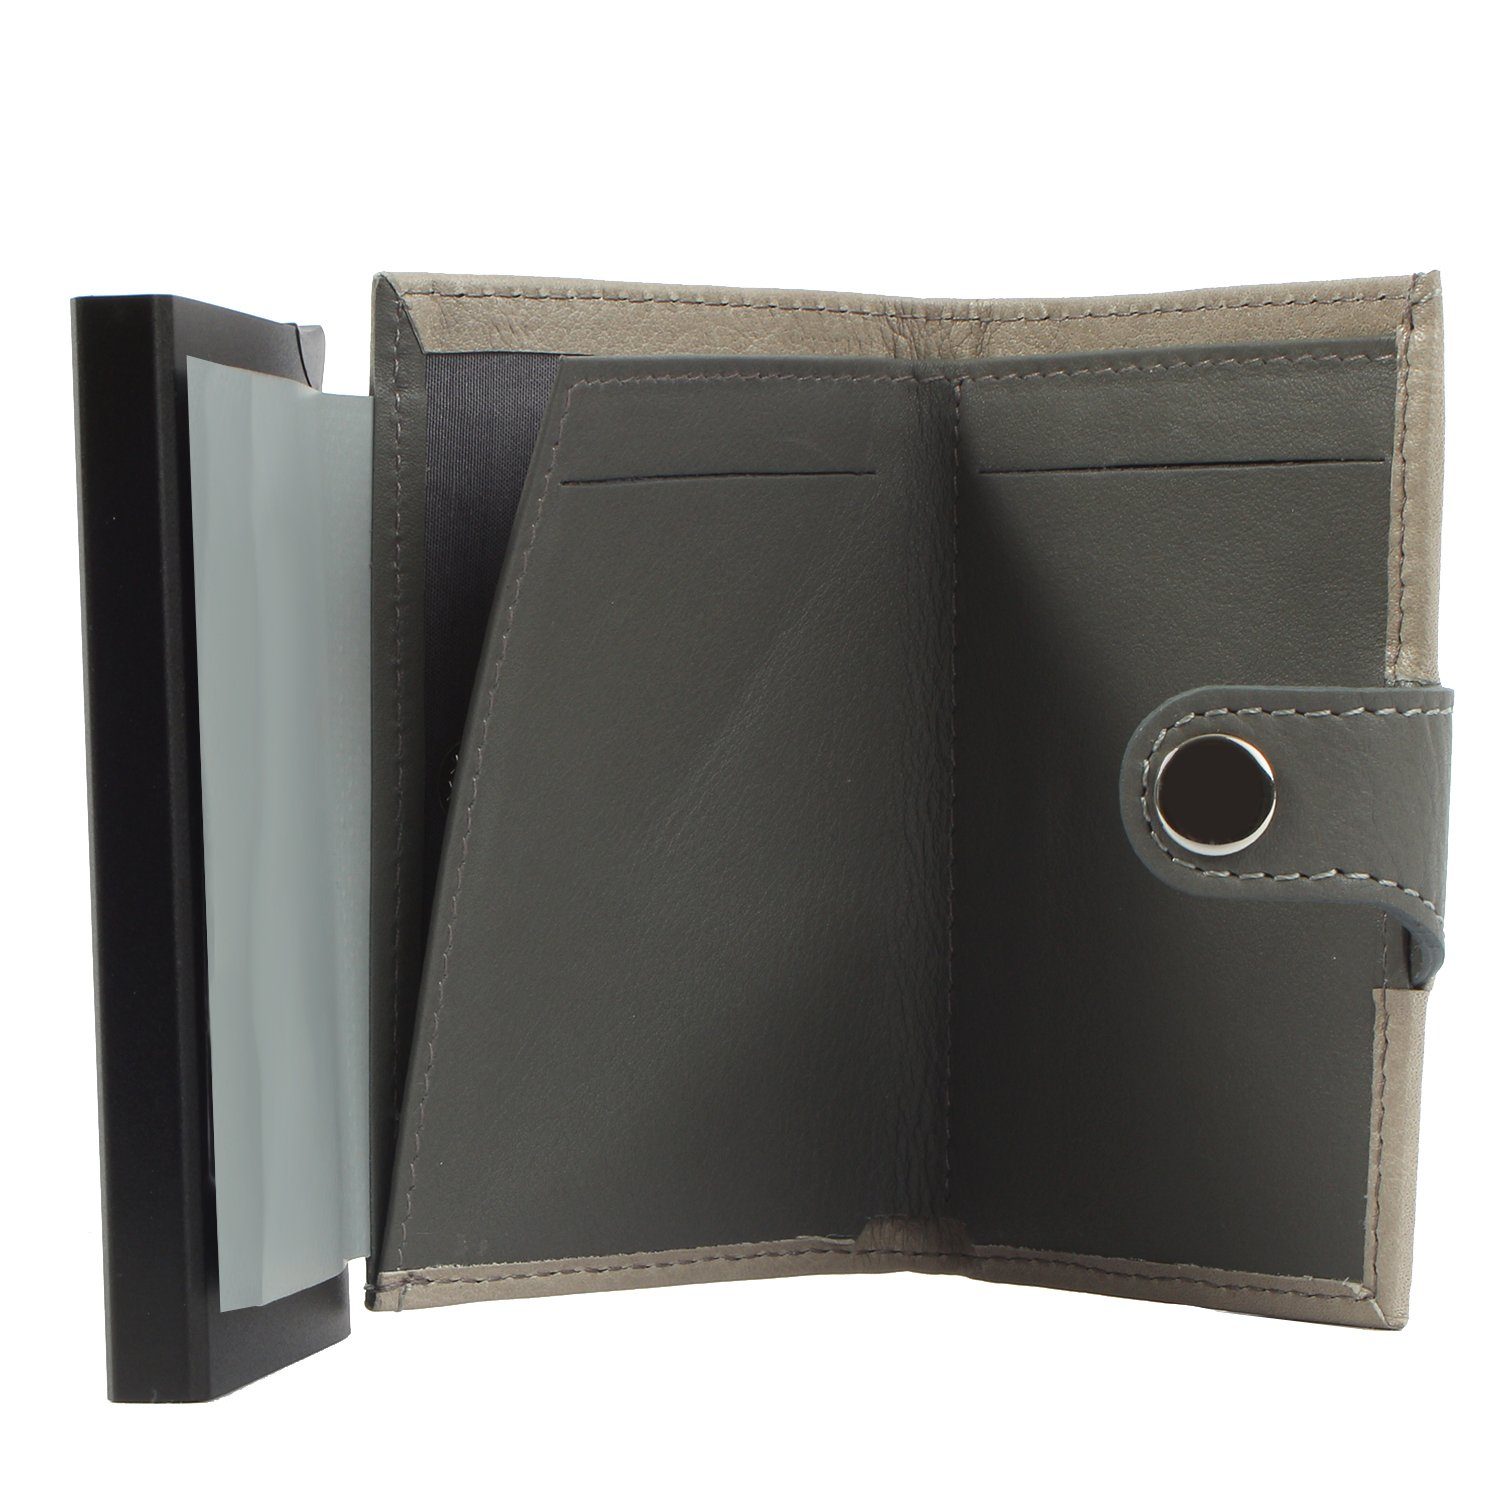 Margelisch Mini Geldbörse aus Leder darkbrown Upcycling noonyu single leather, Kreditkartenbörse